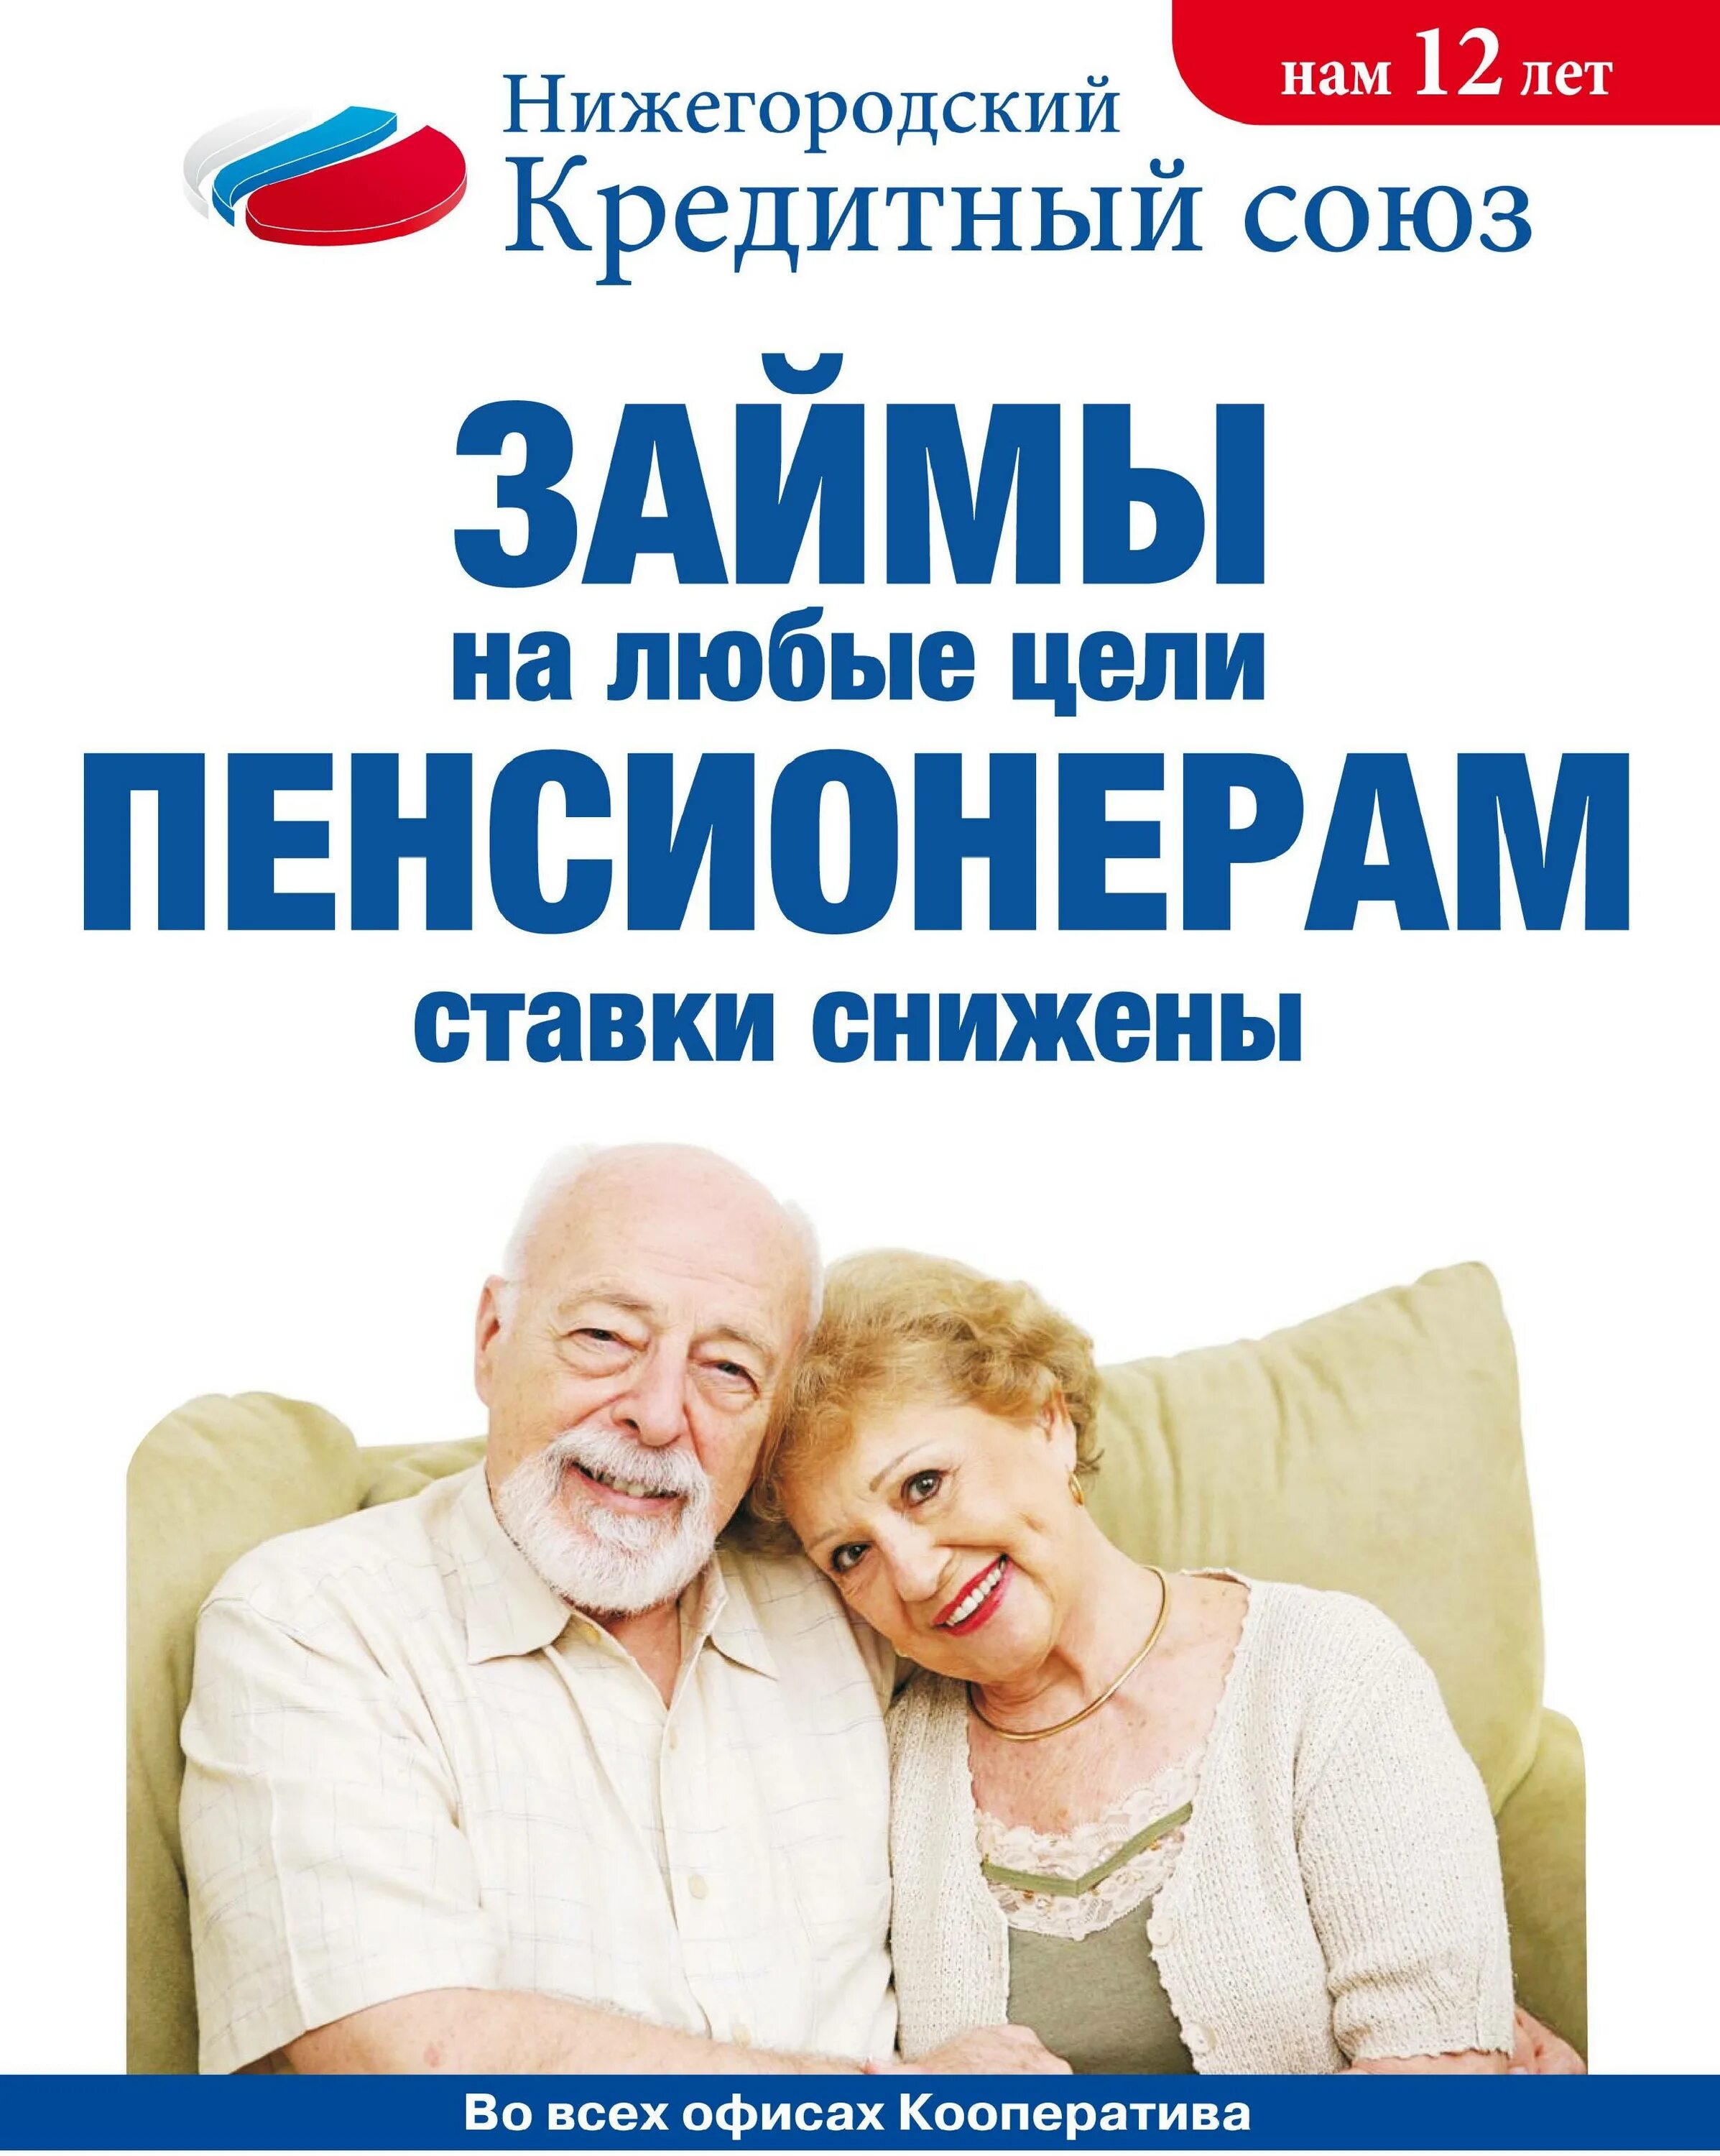 Займы пенсионерам. Реклама займов для пенсионеров. Кредитные карты для пенсионеров. Пенсионер.